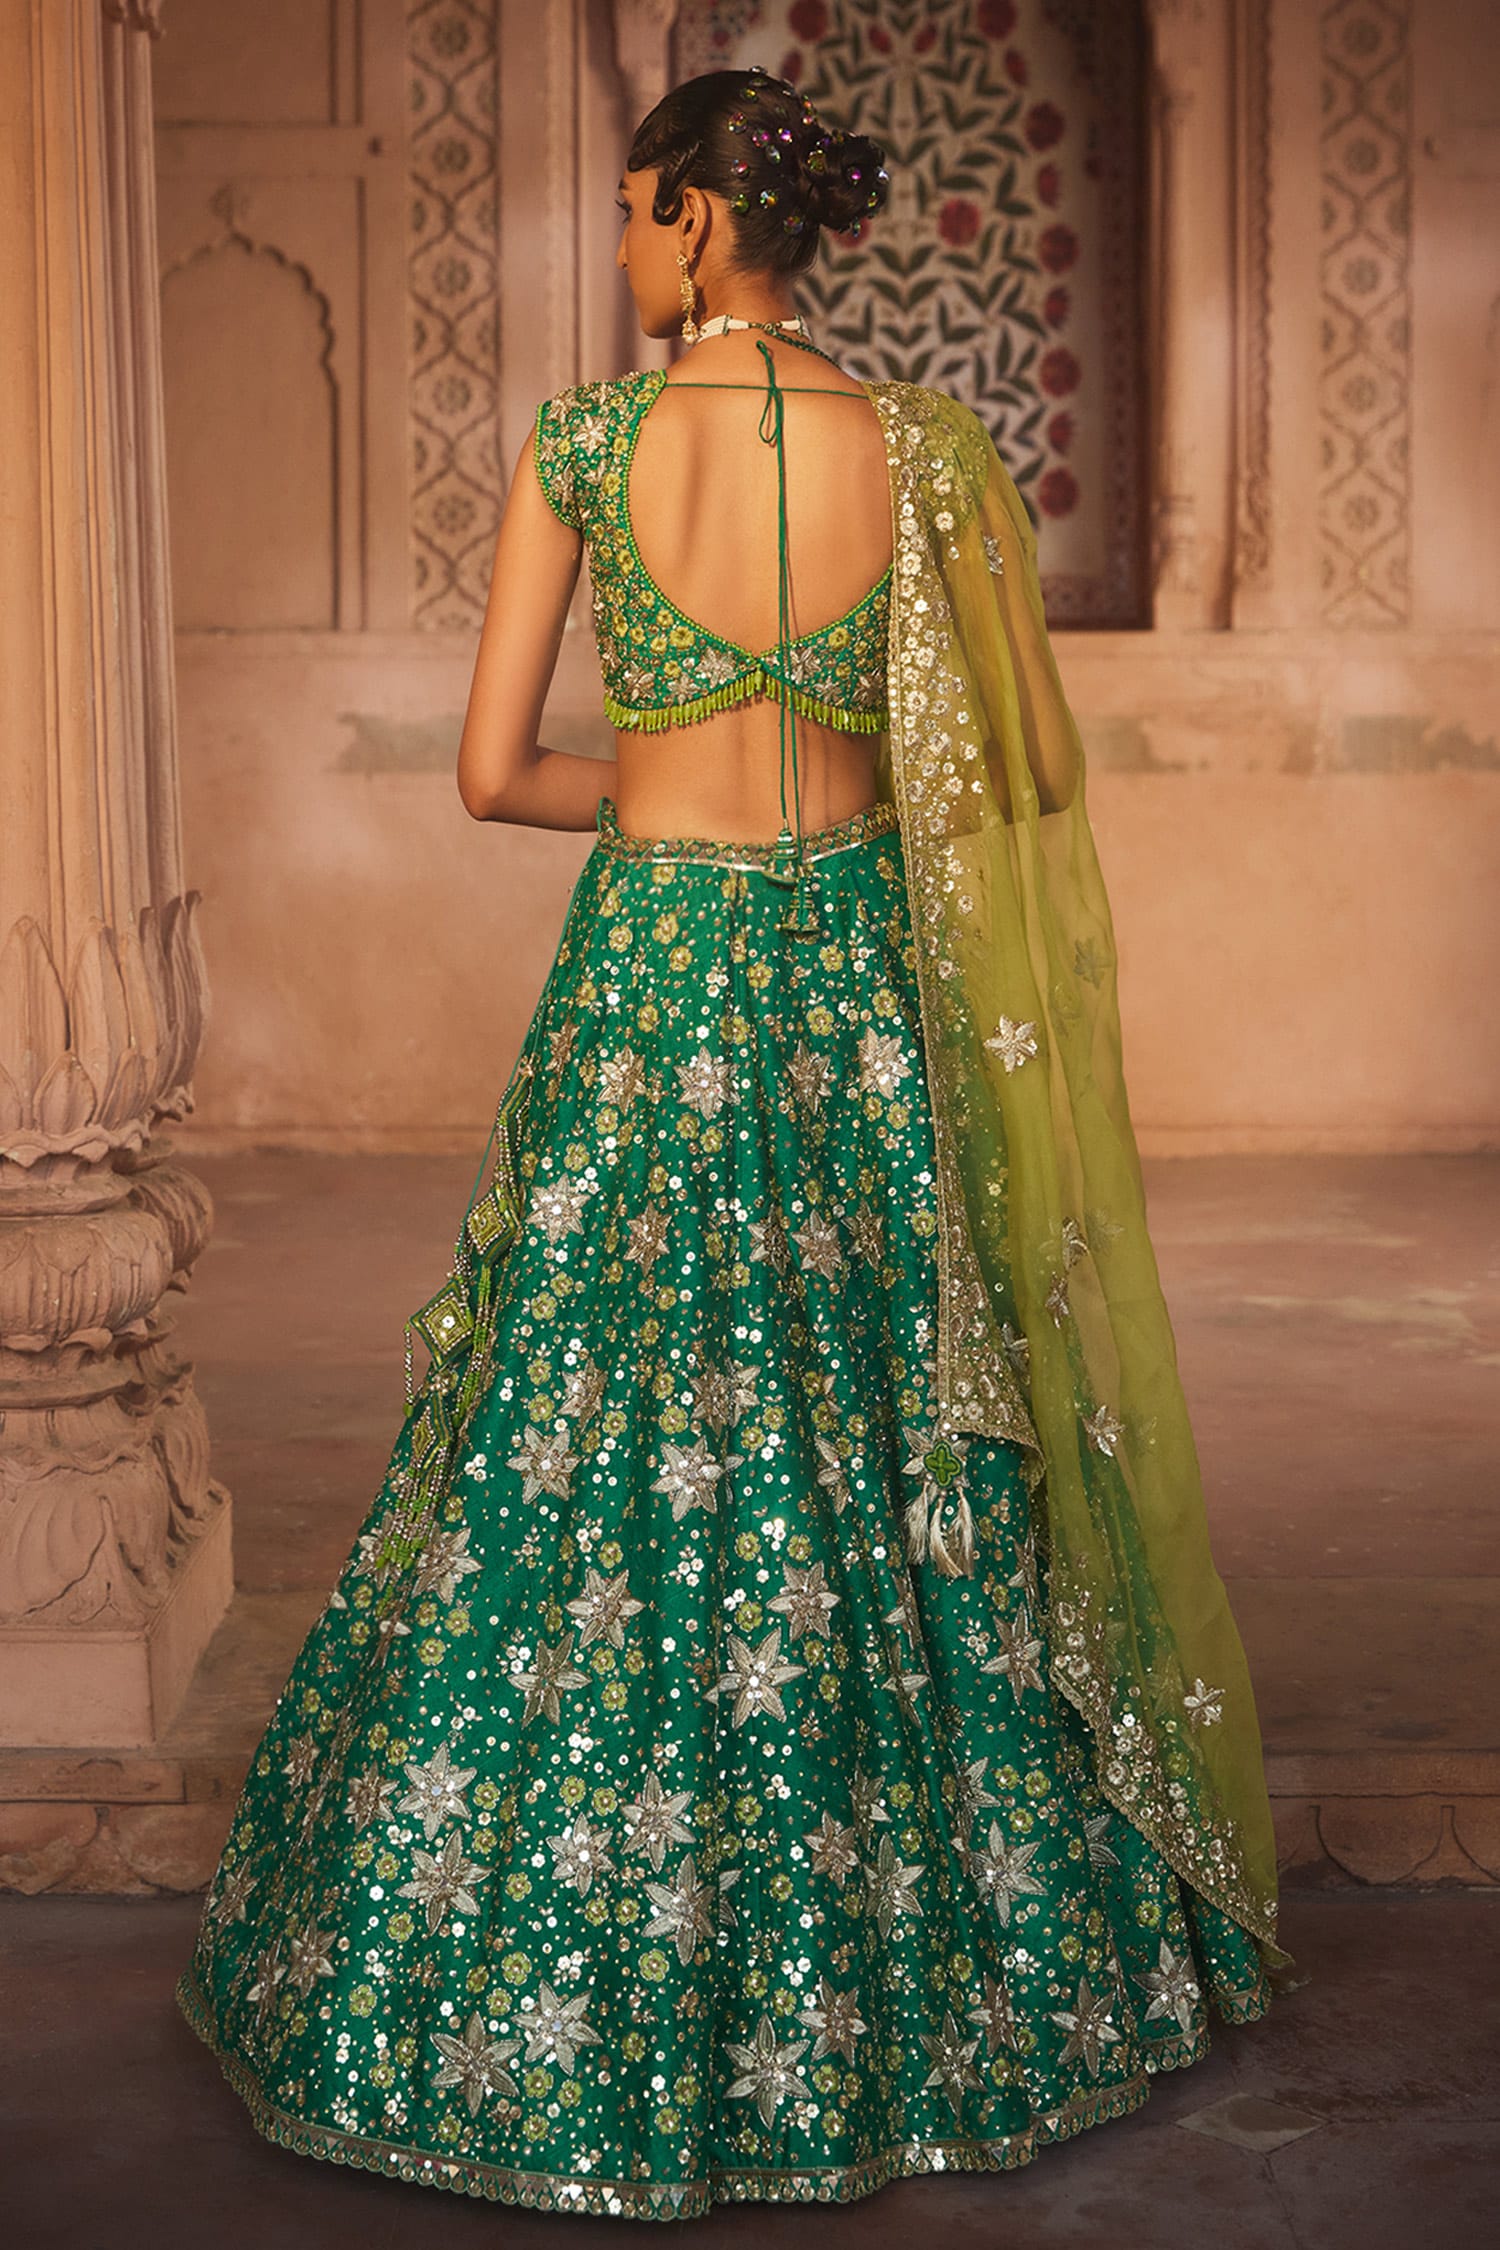 Mahira Sharma copied alia bhatt but failed badly... | Mahira sharma dress,  Green prom dress, Dress